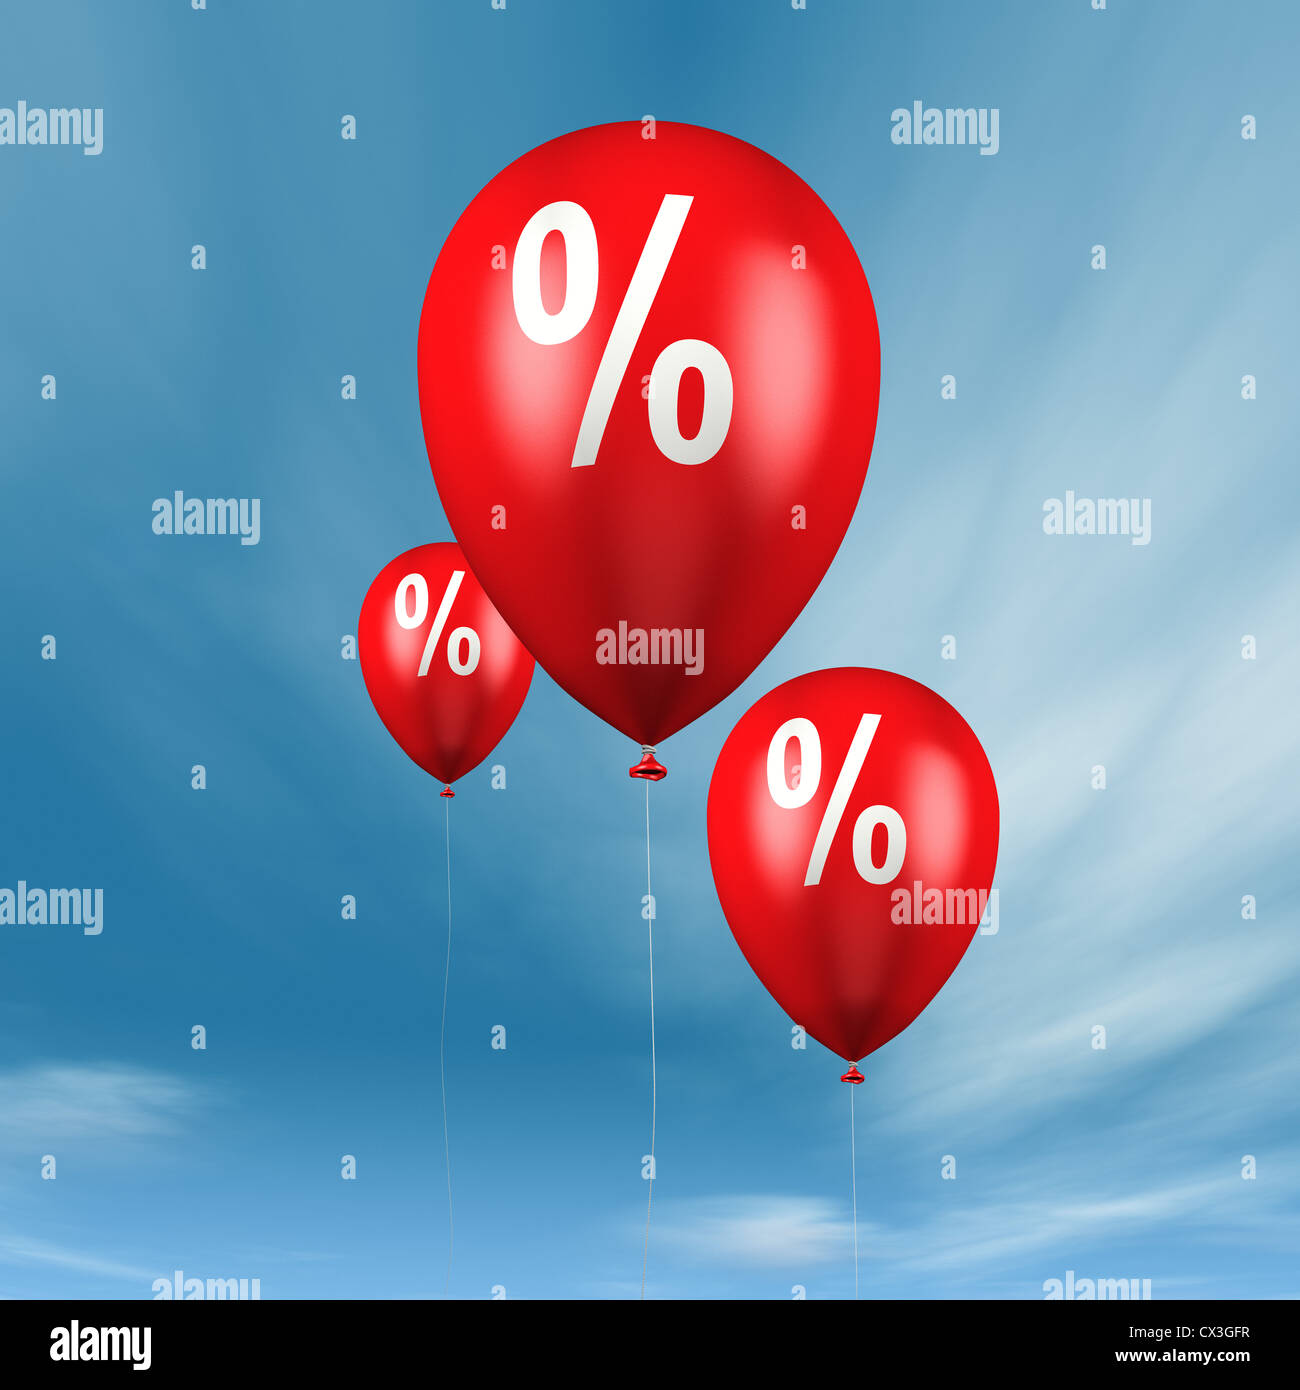 Ballons mit Prozentzeichen vor blauem Himmel - balloons with percentage sign in blue sky Stock Photo